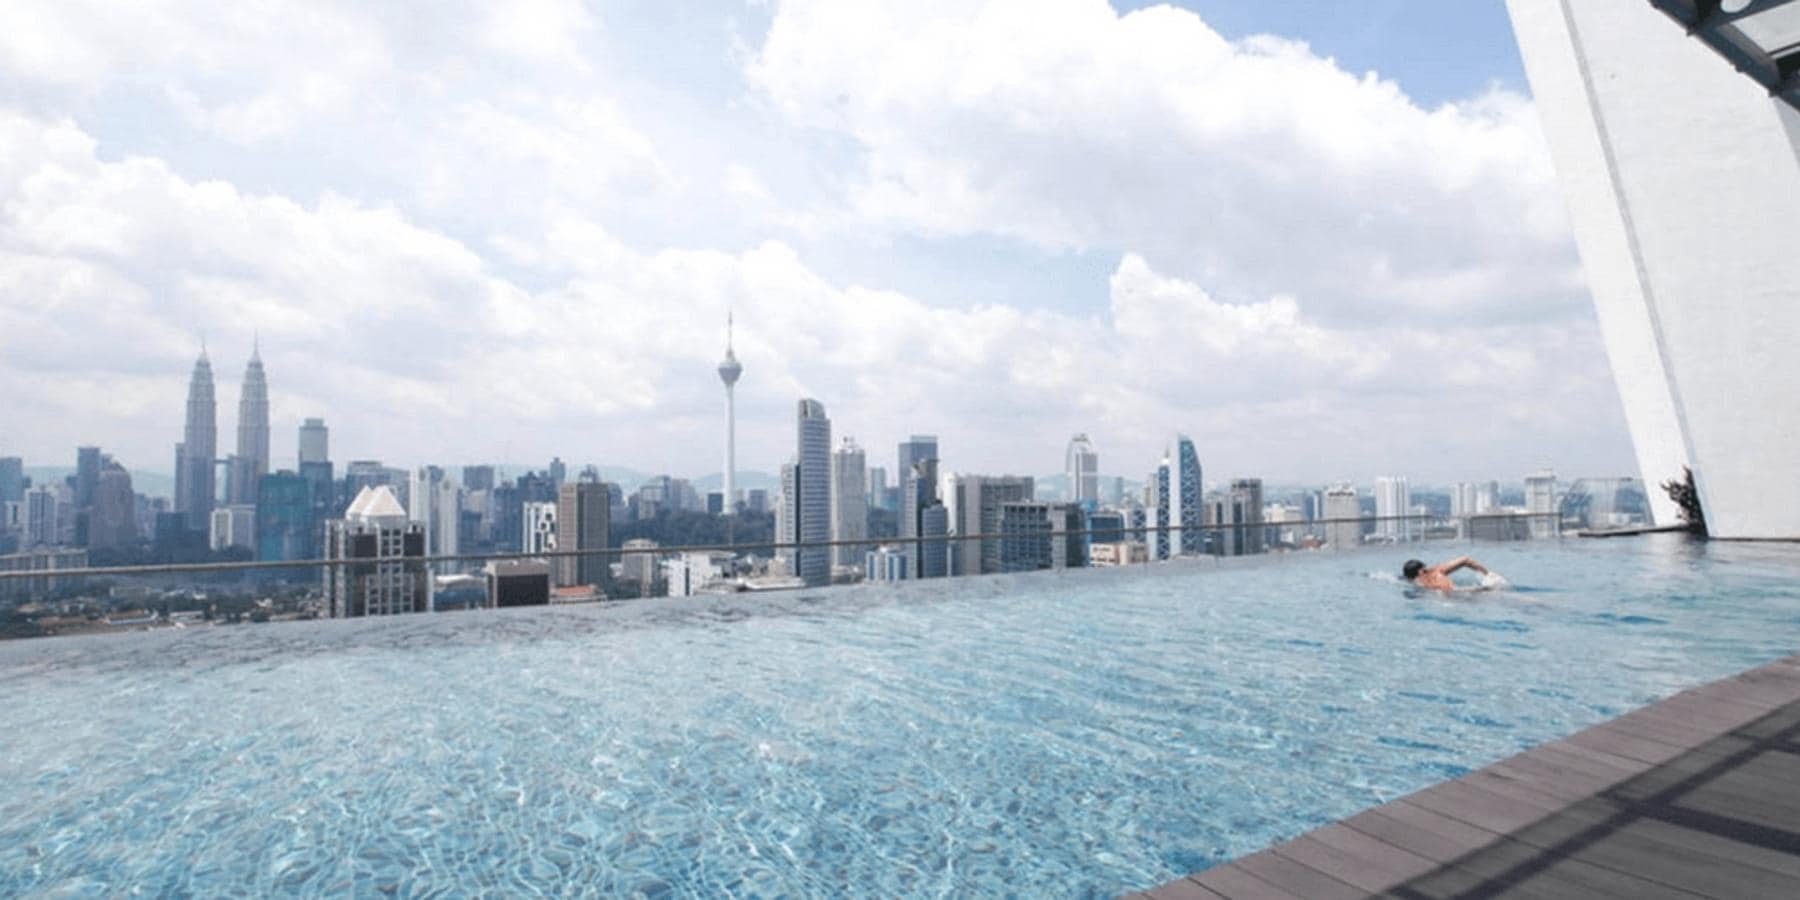 Airbnb Regalia Suites &amp; Residences, Kuala Lumpur, Malasia. Se trata del bloque de apartamentos más famoso de Kuala Lumpur, en Malasia. Si tu sueño es visitar esta ciudad asiática, puede que la mejor de las opciones sea la de alojarte, al menos una noche, en este Airbnb no solo con piscina infinity, sino también a ras del cielo. Las impresionantes vistas que se pueden disfrutar desde esta ubicación no se superan desde ninguna otra perspectiva de la ciudad ya que se encuentra en la planta 37 del edificio. El Sky line de Kuala Lumpur se encontrará frente a ti.